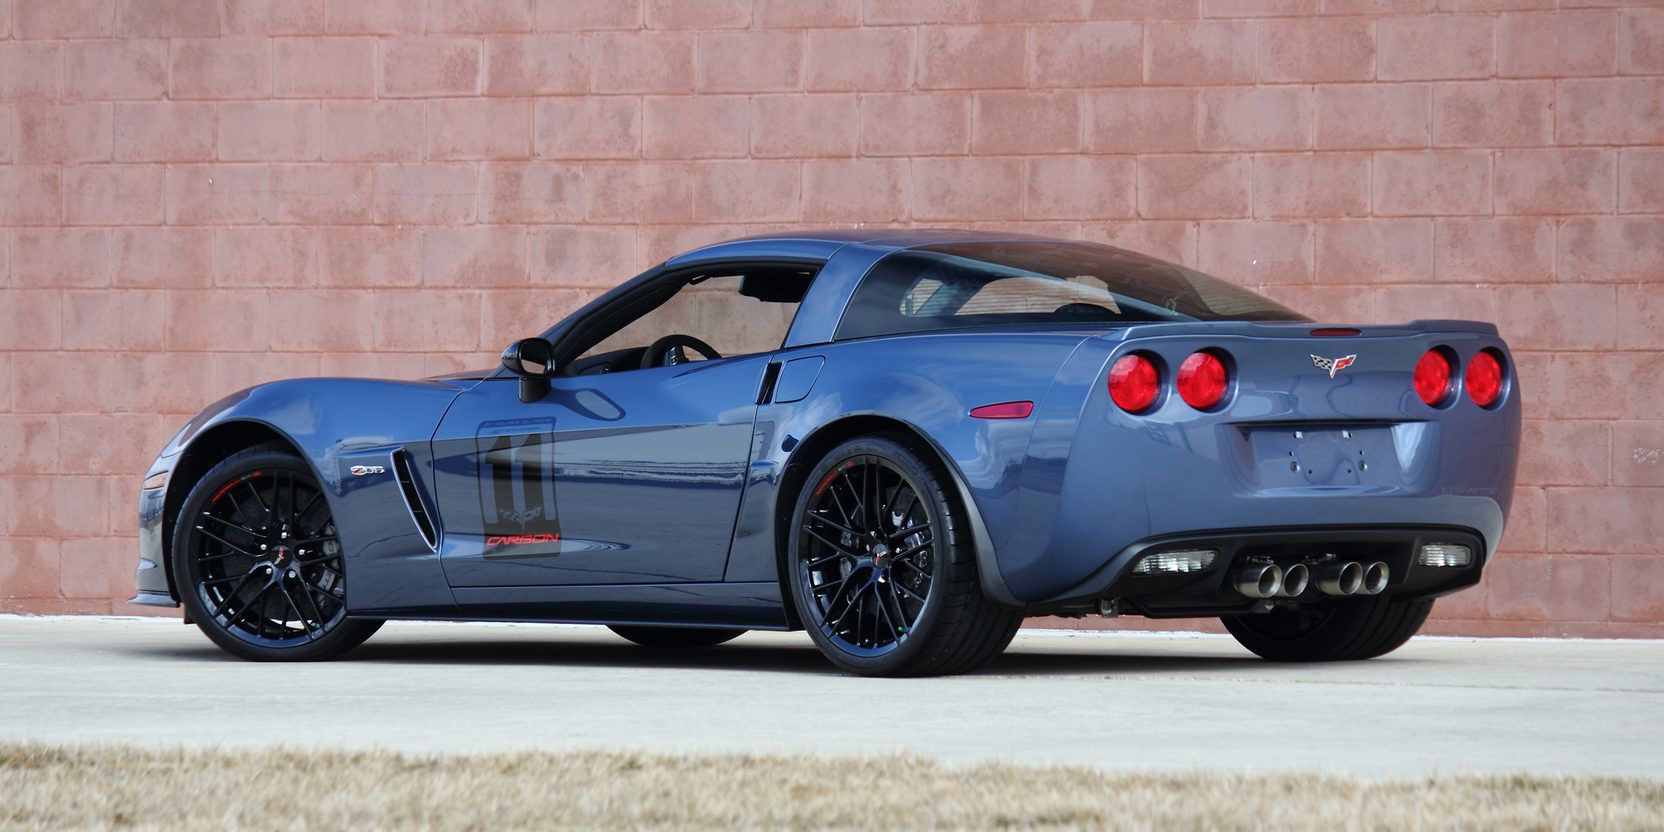 Corvette C6 Z06 Carbon Edition gray